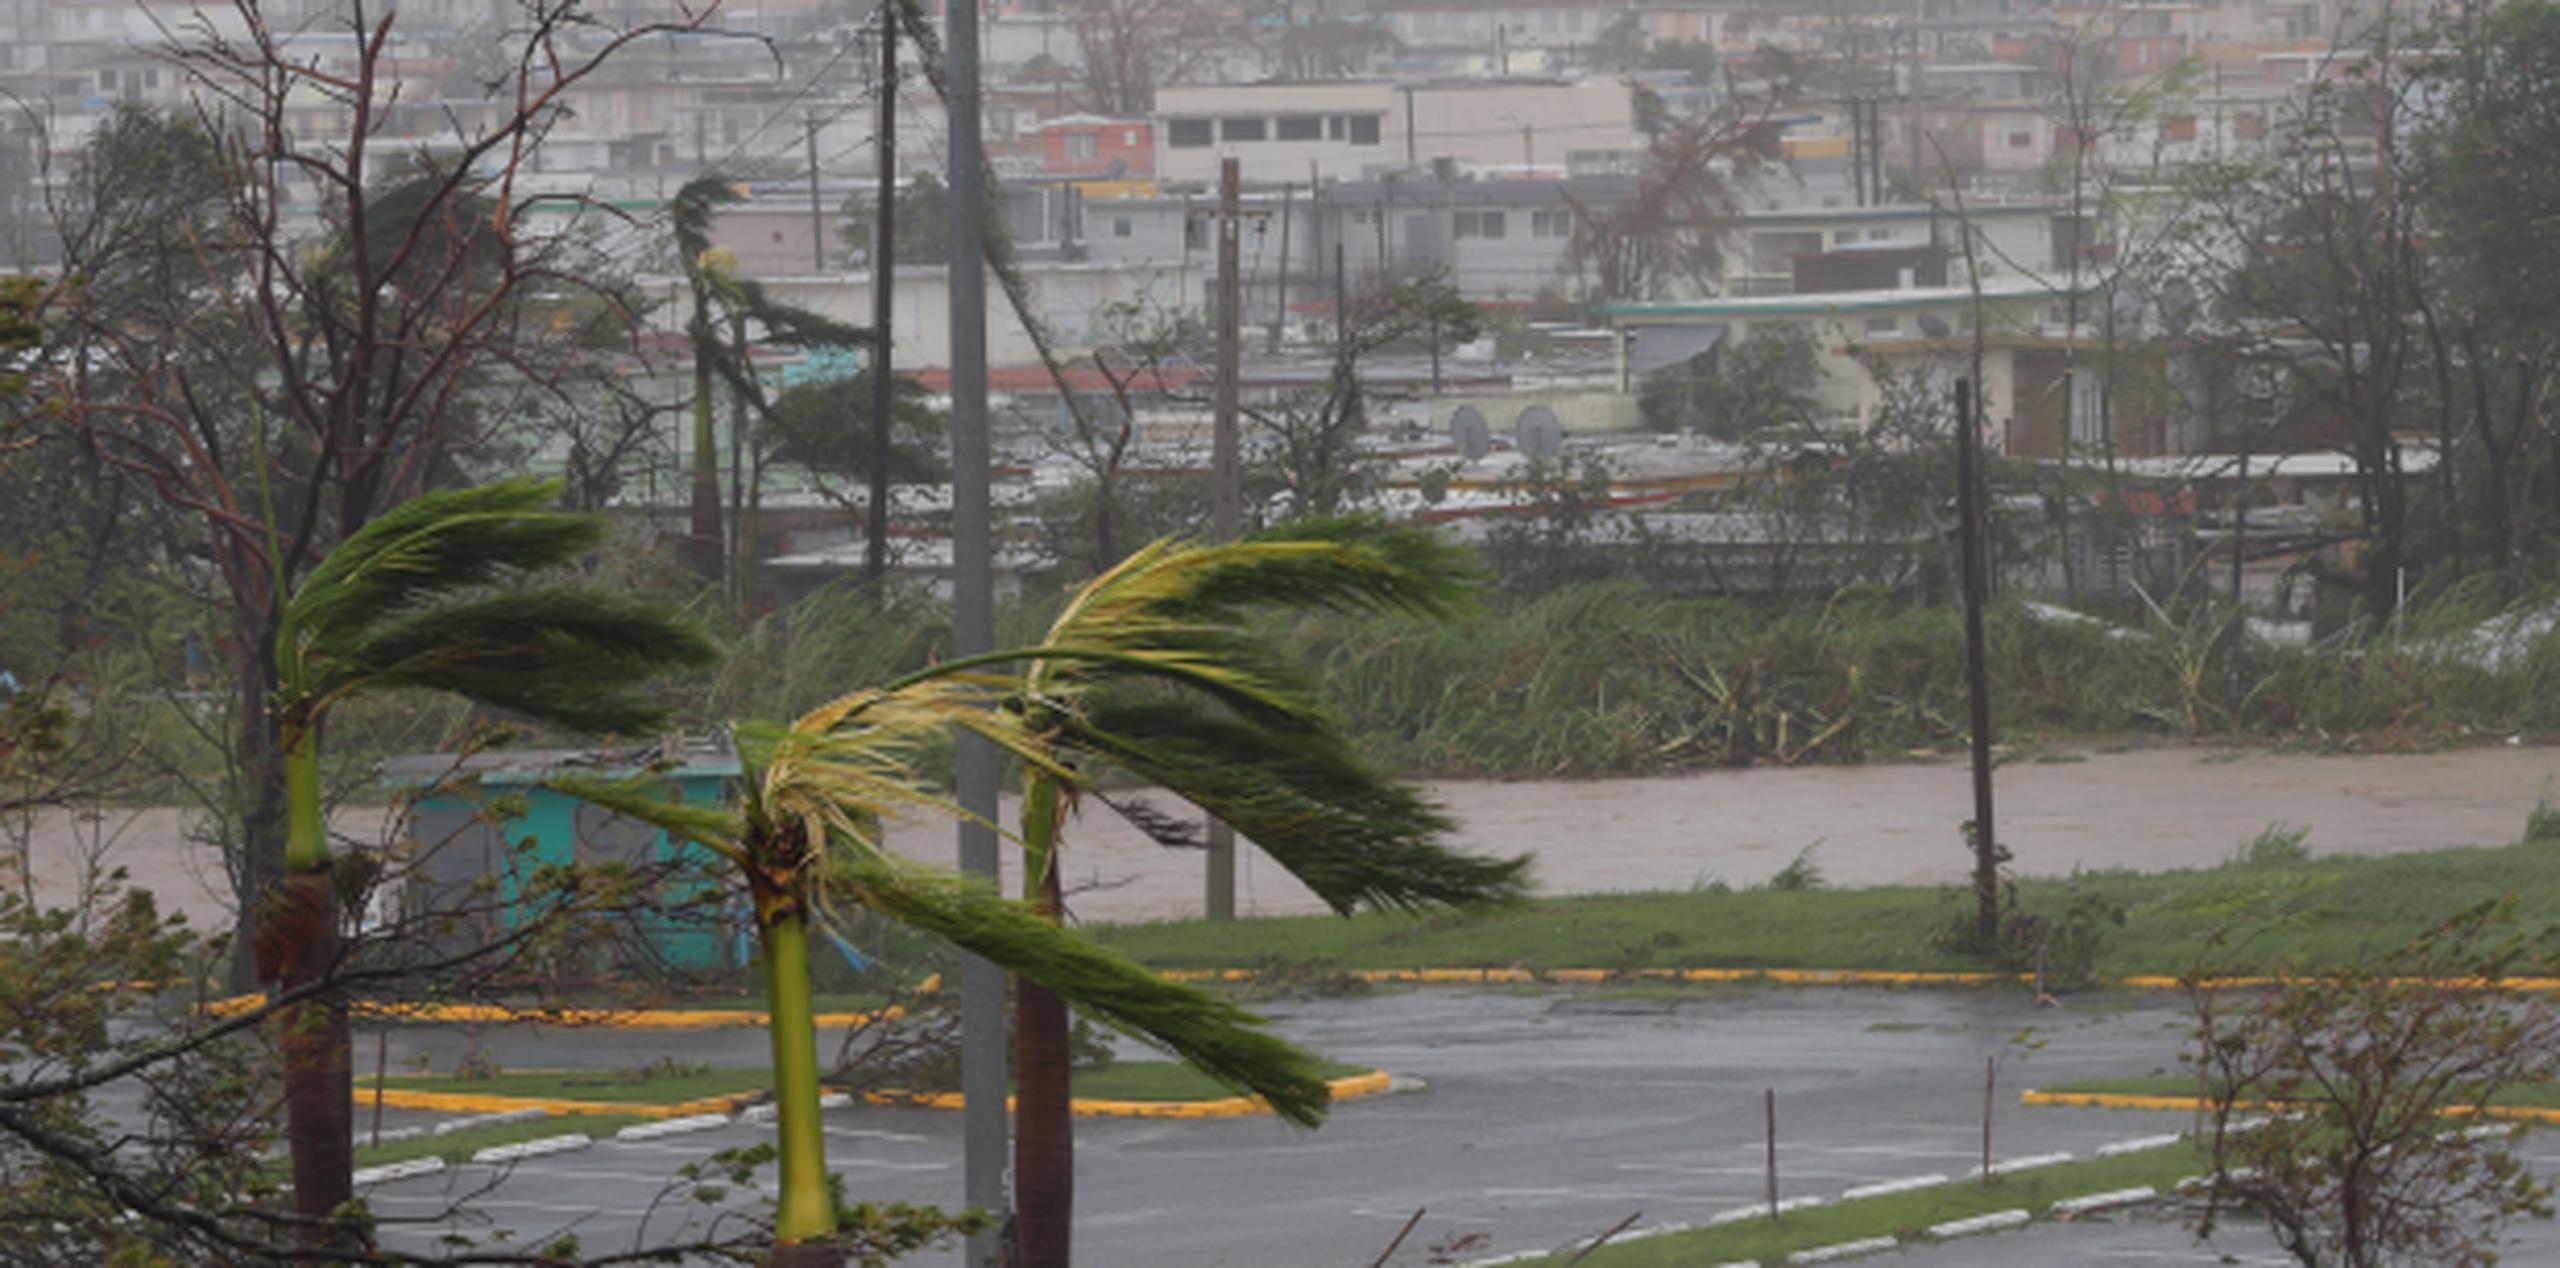 La red incluye numerosos videos de supuestos daños ocasionados por María en la Isla. (vanessa.serra@gfrmedia.com)

